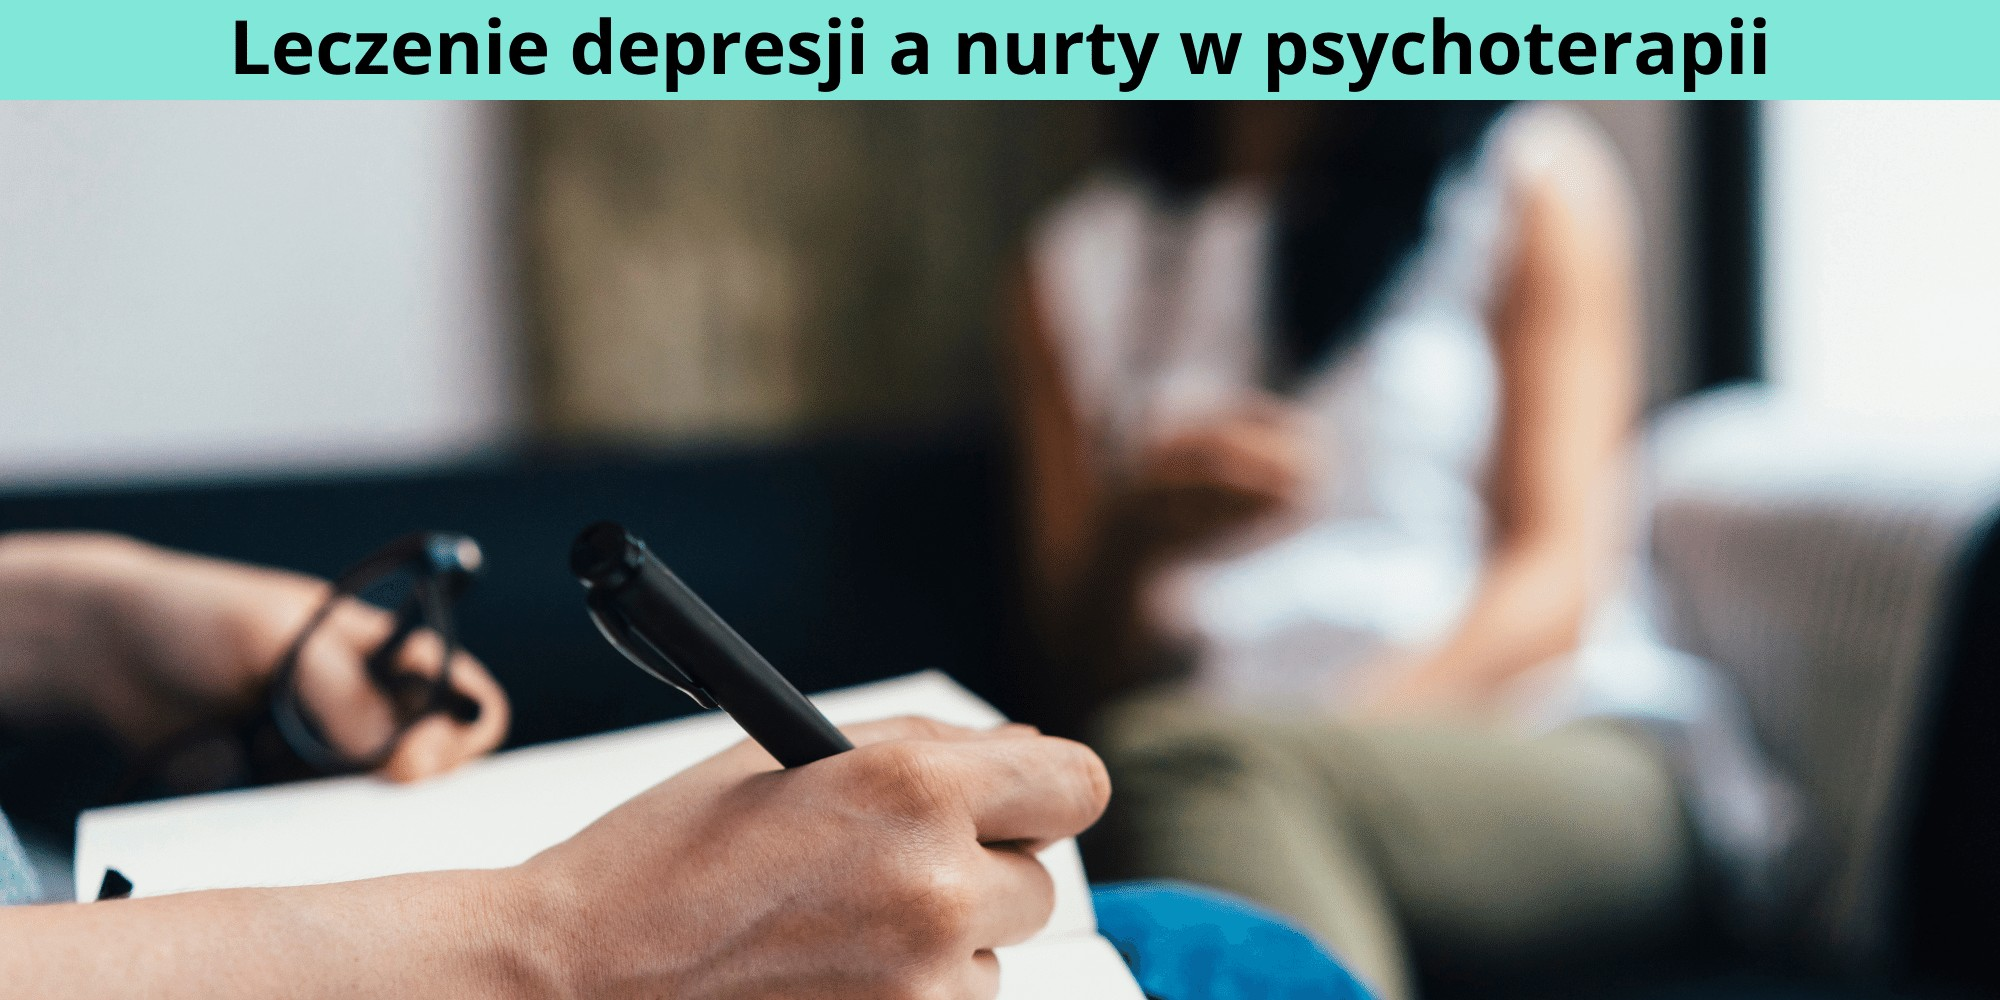 Leczenie depresji a nurty w psychoterapii